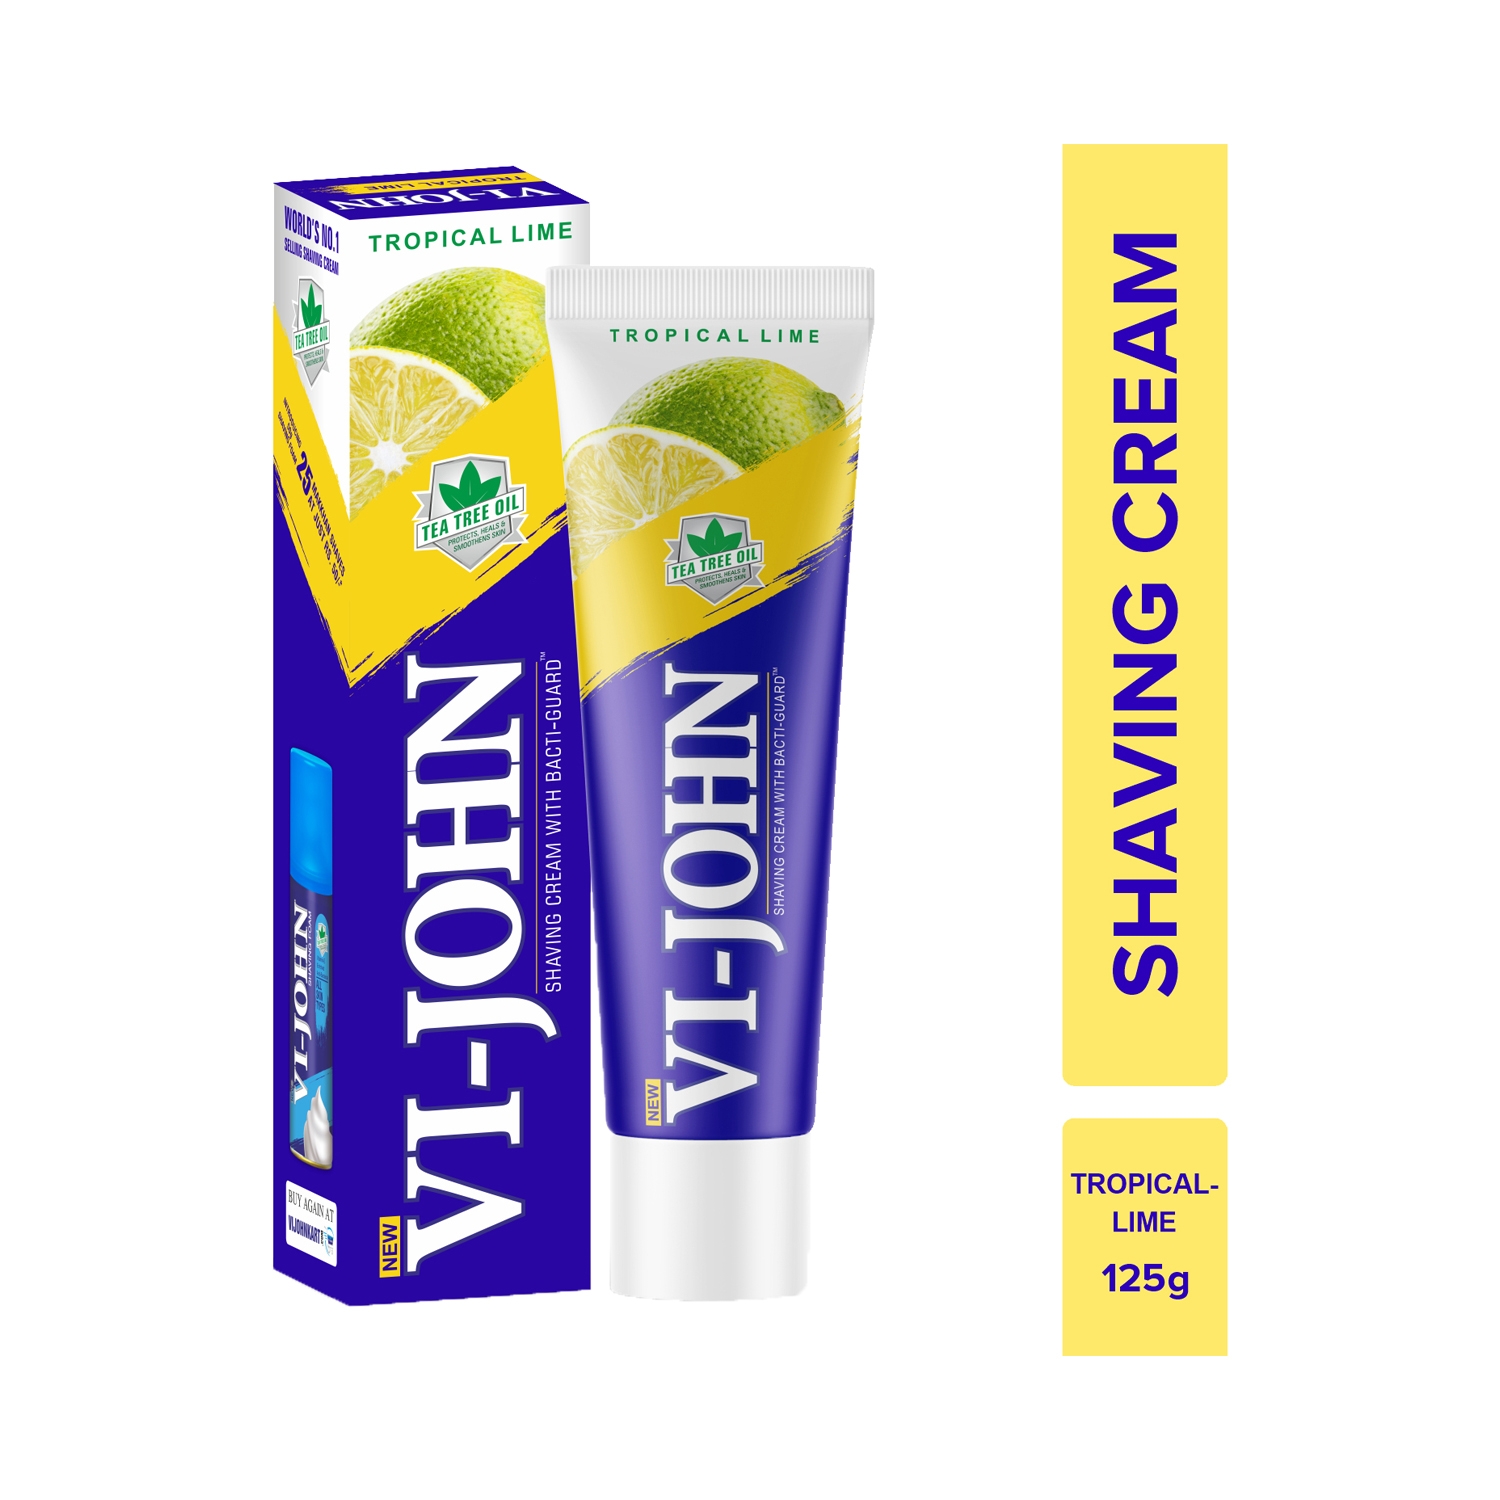 VI-JOHN | VI-JOHN Tropical Lime Shaving Cream With Tea Tree Oil & Bacti-Guard (125g)